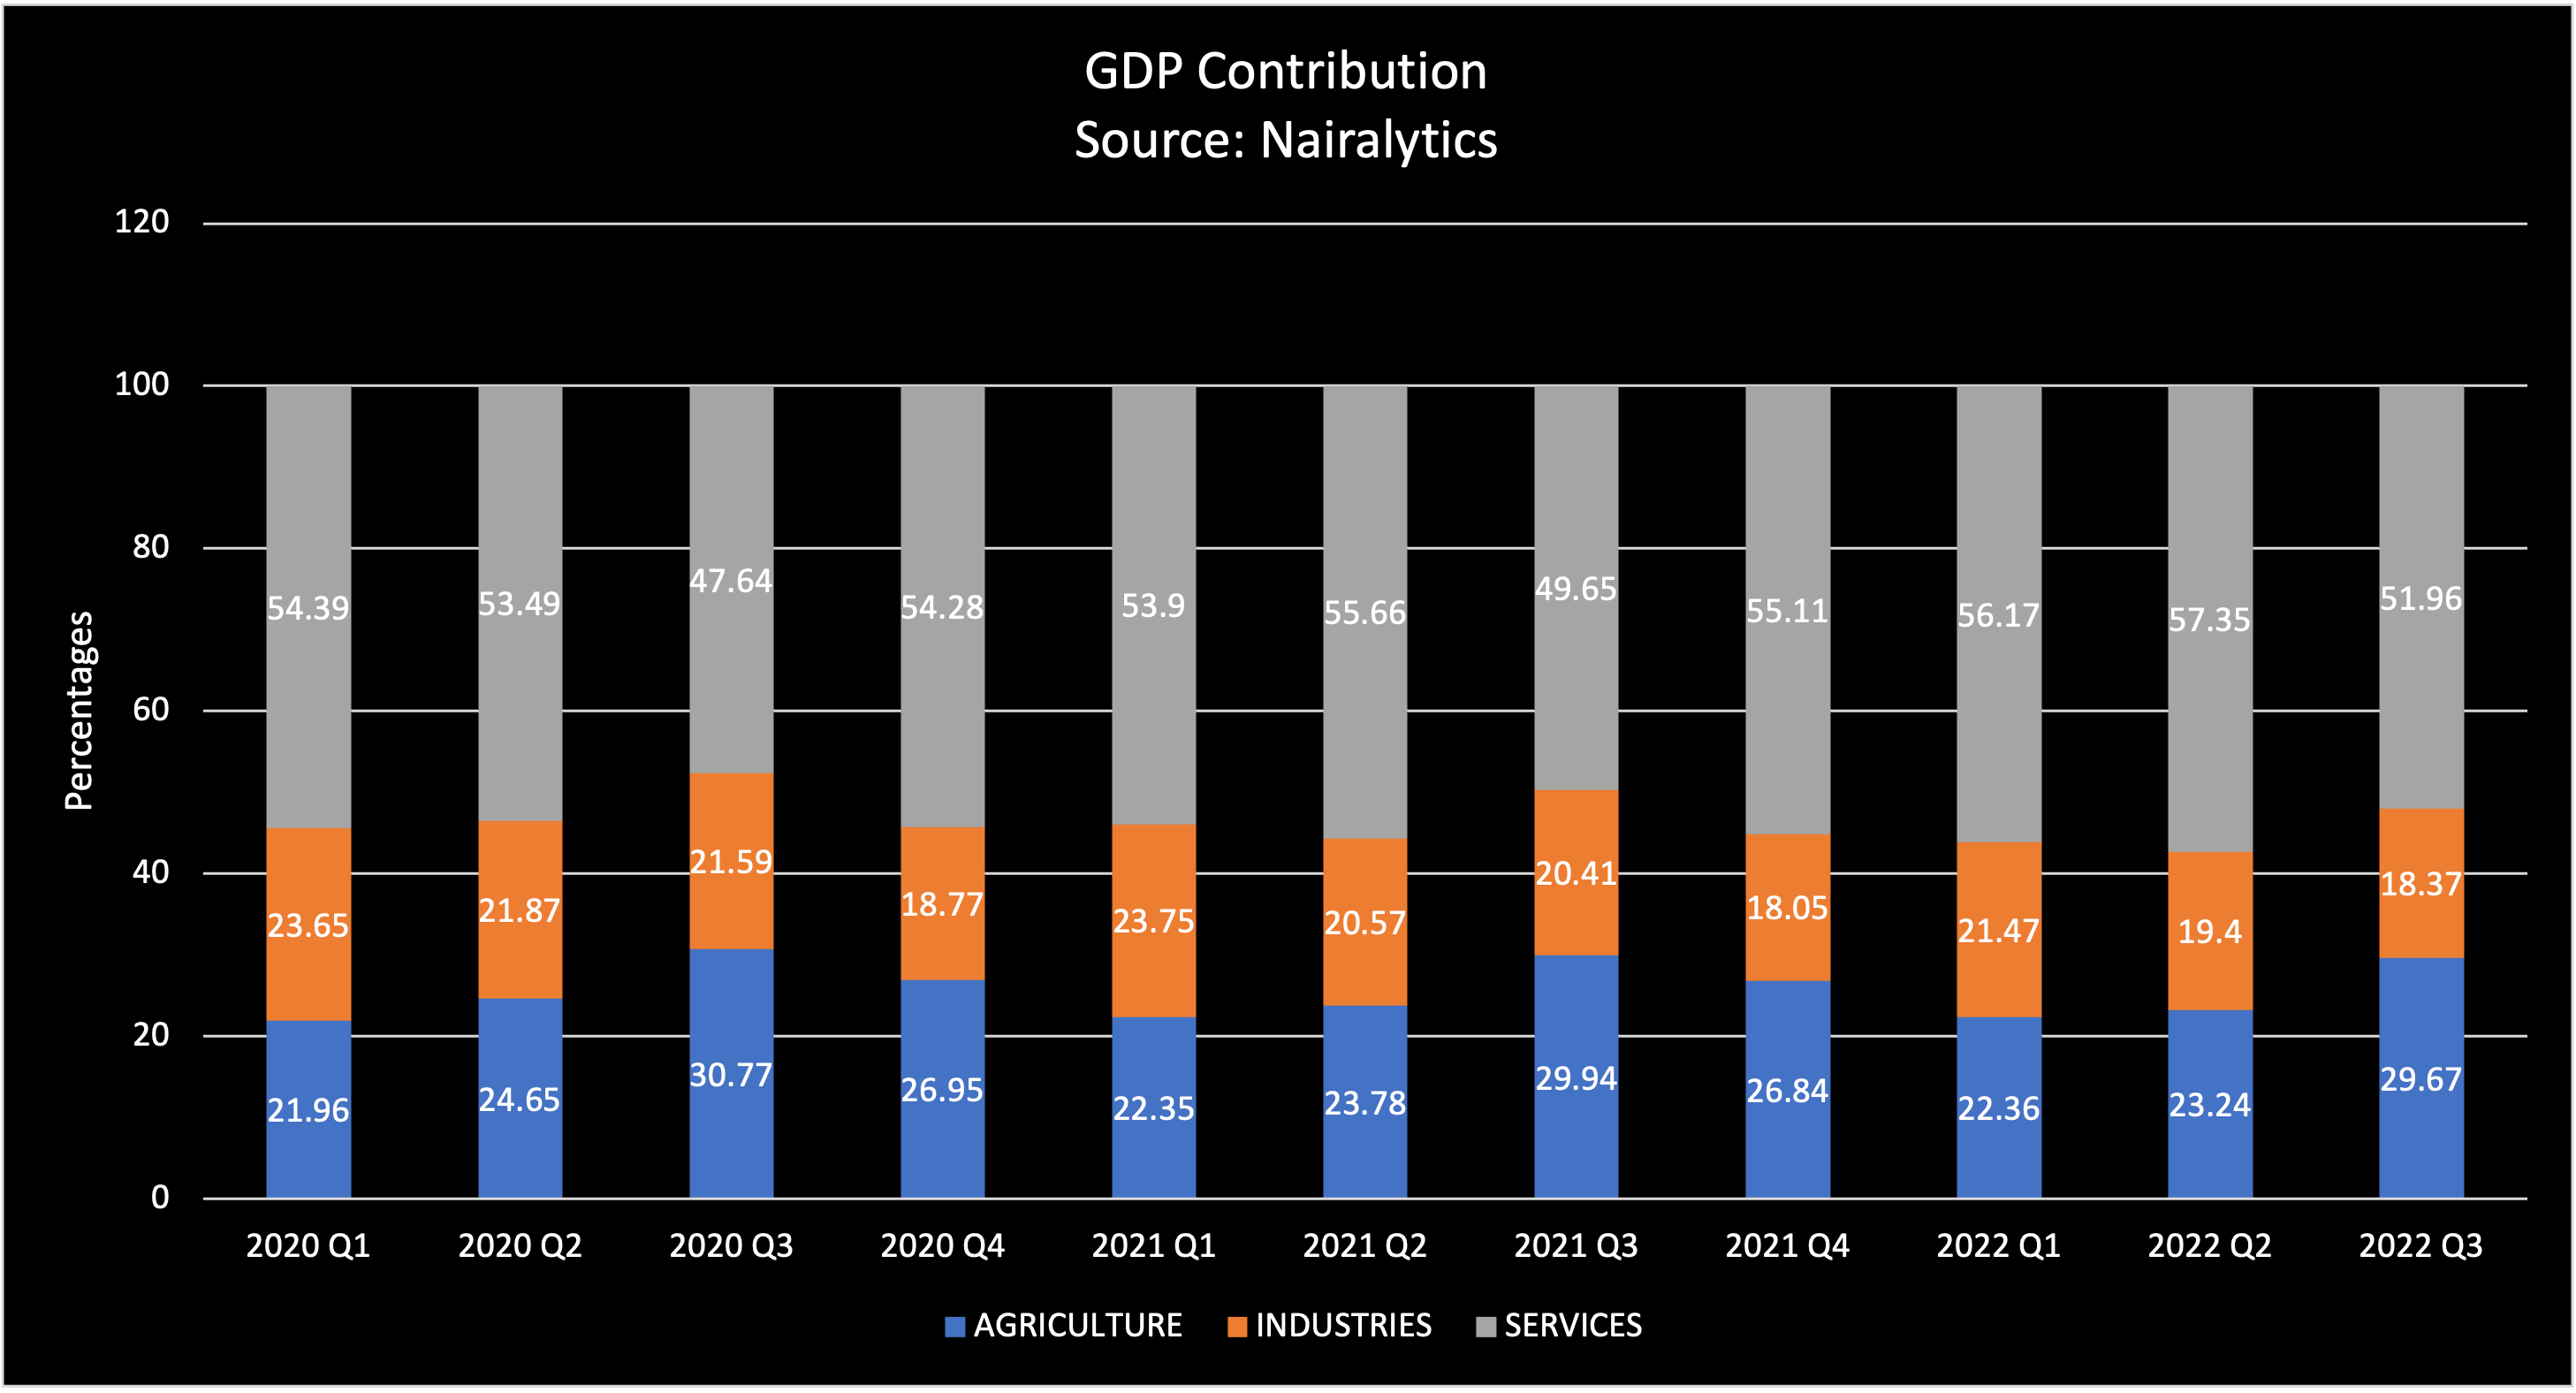 GDP Contribution2020 - 2022 Q3 Source: Nairalytics